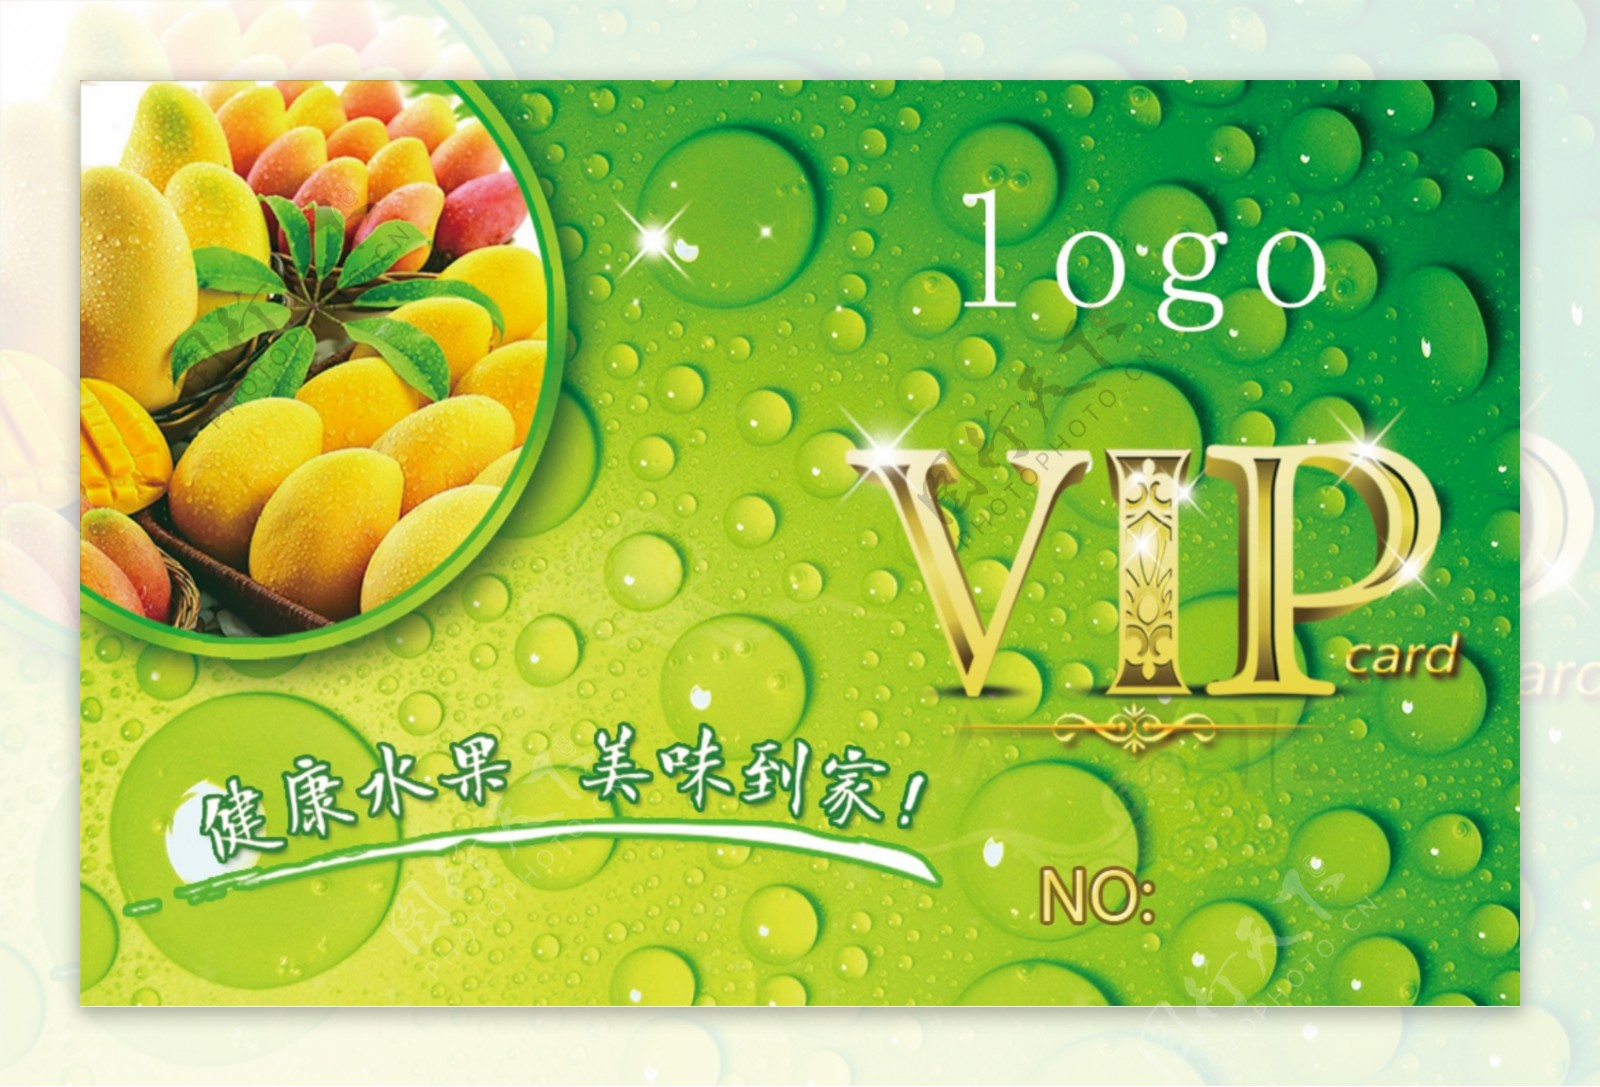 水果店vip卡